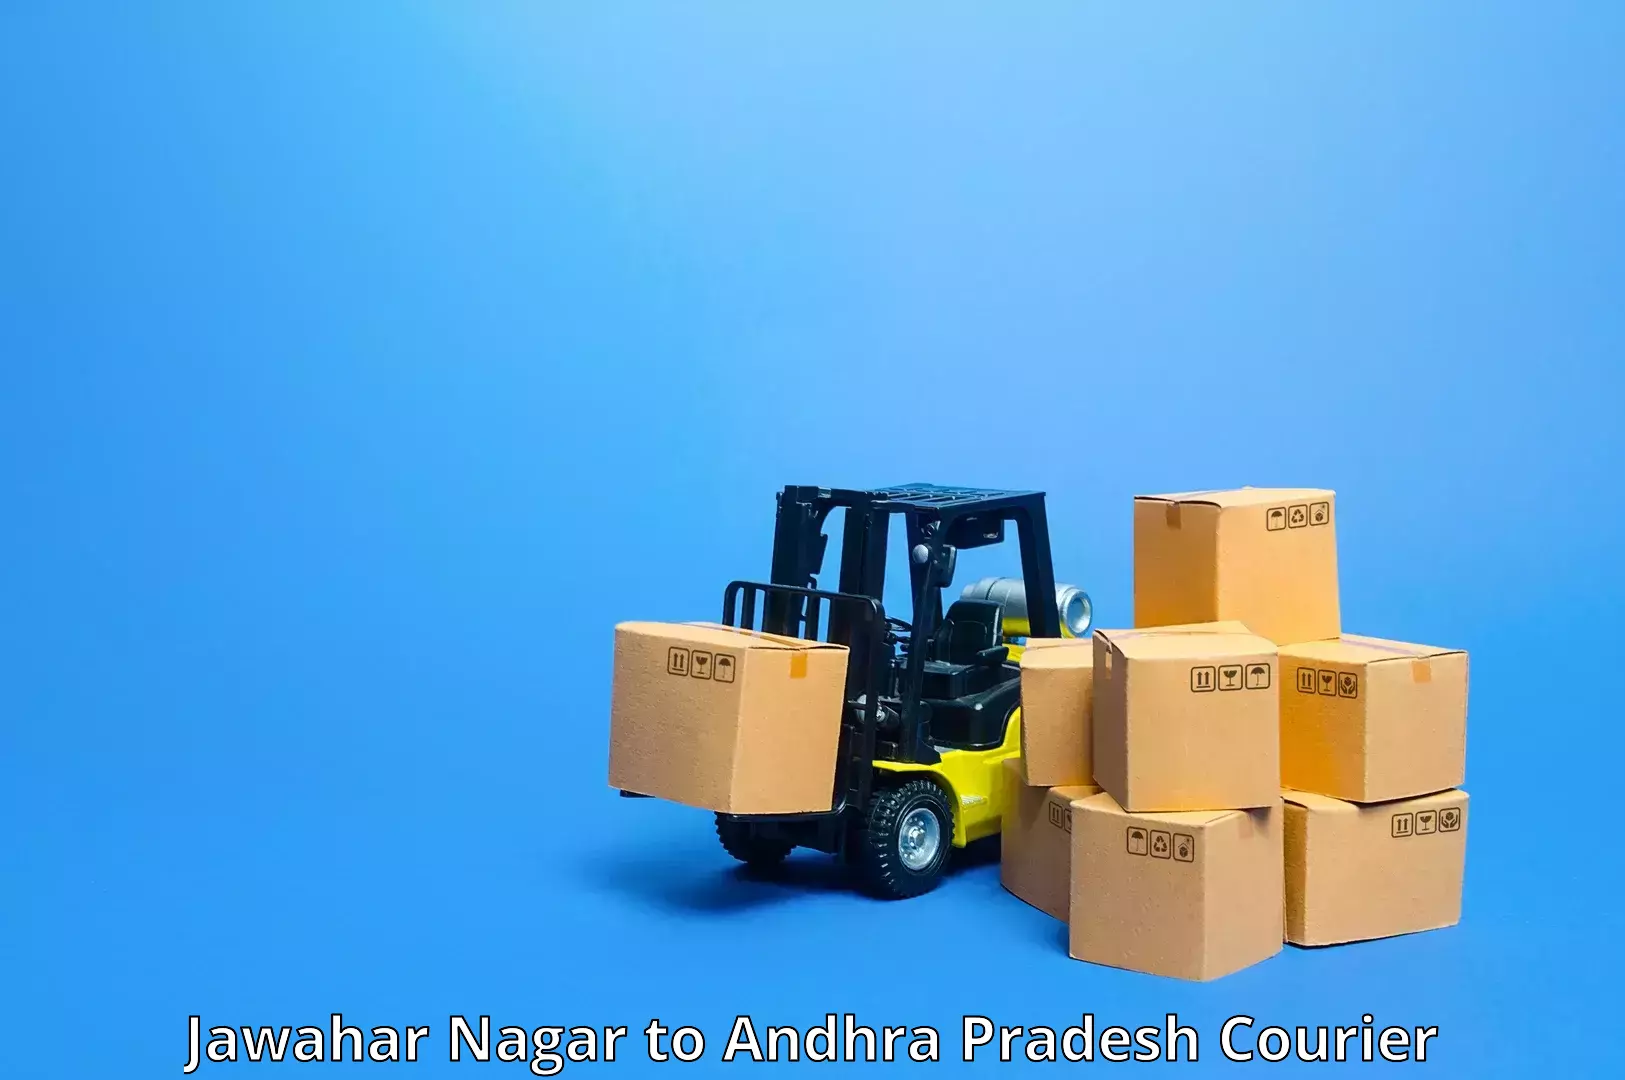 Ocean freight courier Jawahar Nagar to Pedapadu